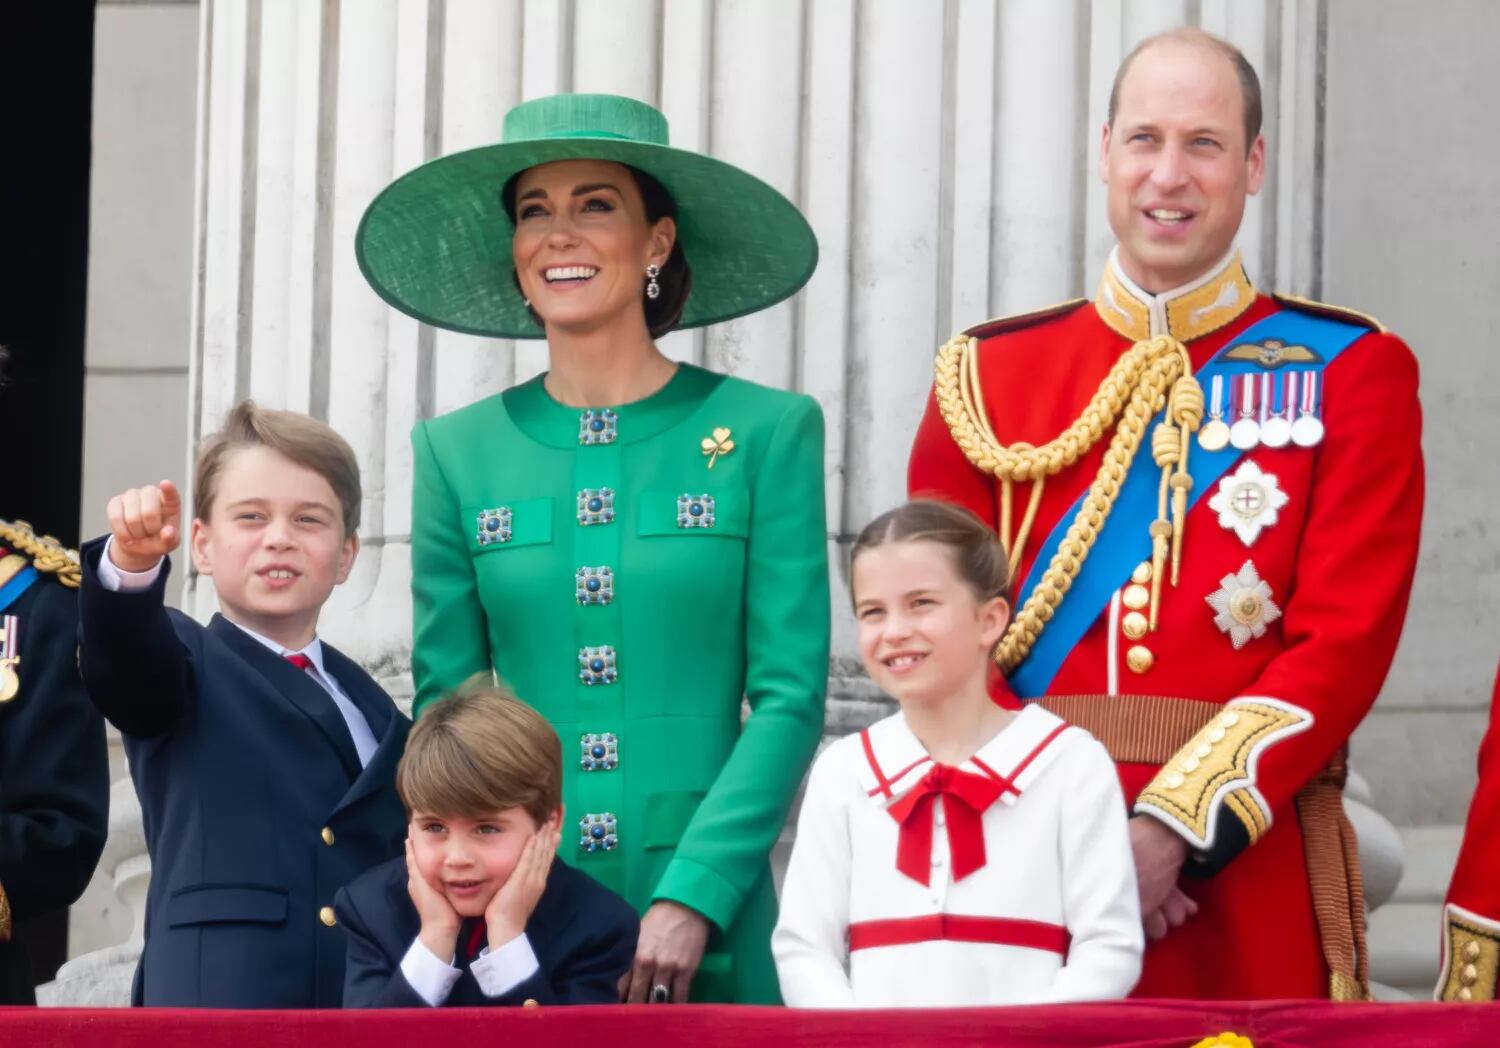 La princesa Kate Middleton afirmó que ha contado con el apoyo incondicional de su esposo, el príncipe William, y que ambos han tratado de explicarle a sus hijos George, Charlotte y Louis sobre su estado de salud. Foto: Archivo.